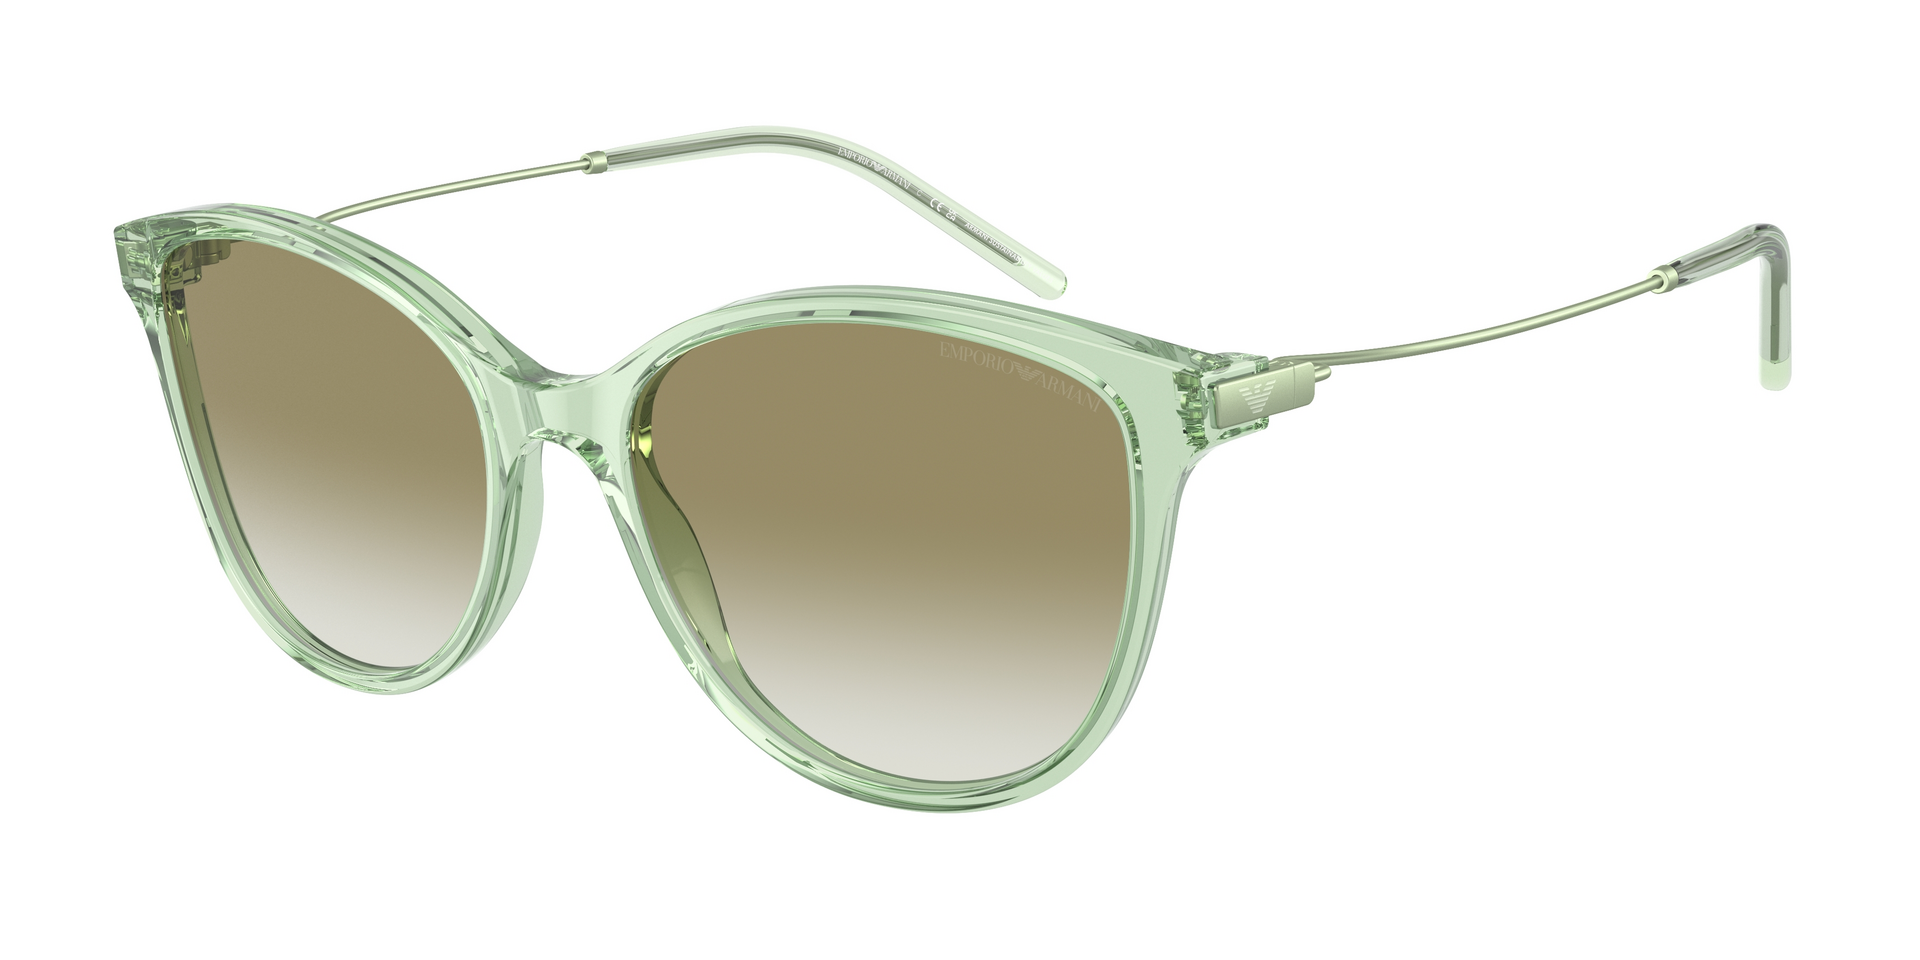 Das Bild zeigt die Sonnenbrille EA4220 61078E von der Marke Emporio Armani in grün.